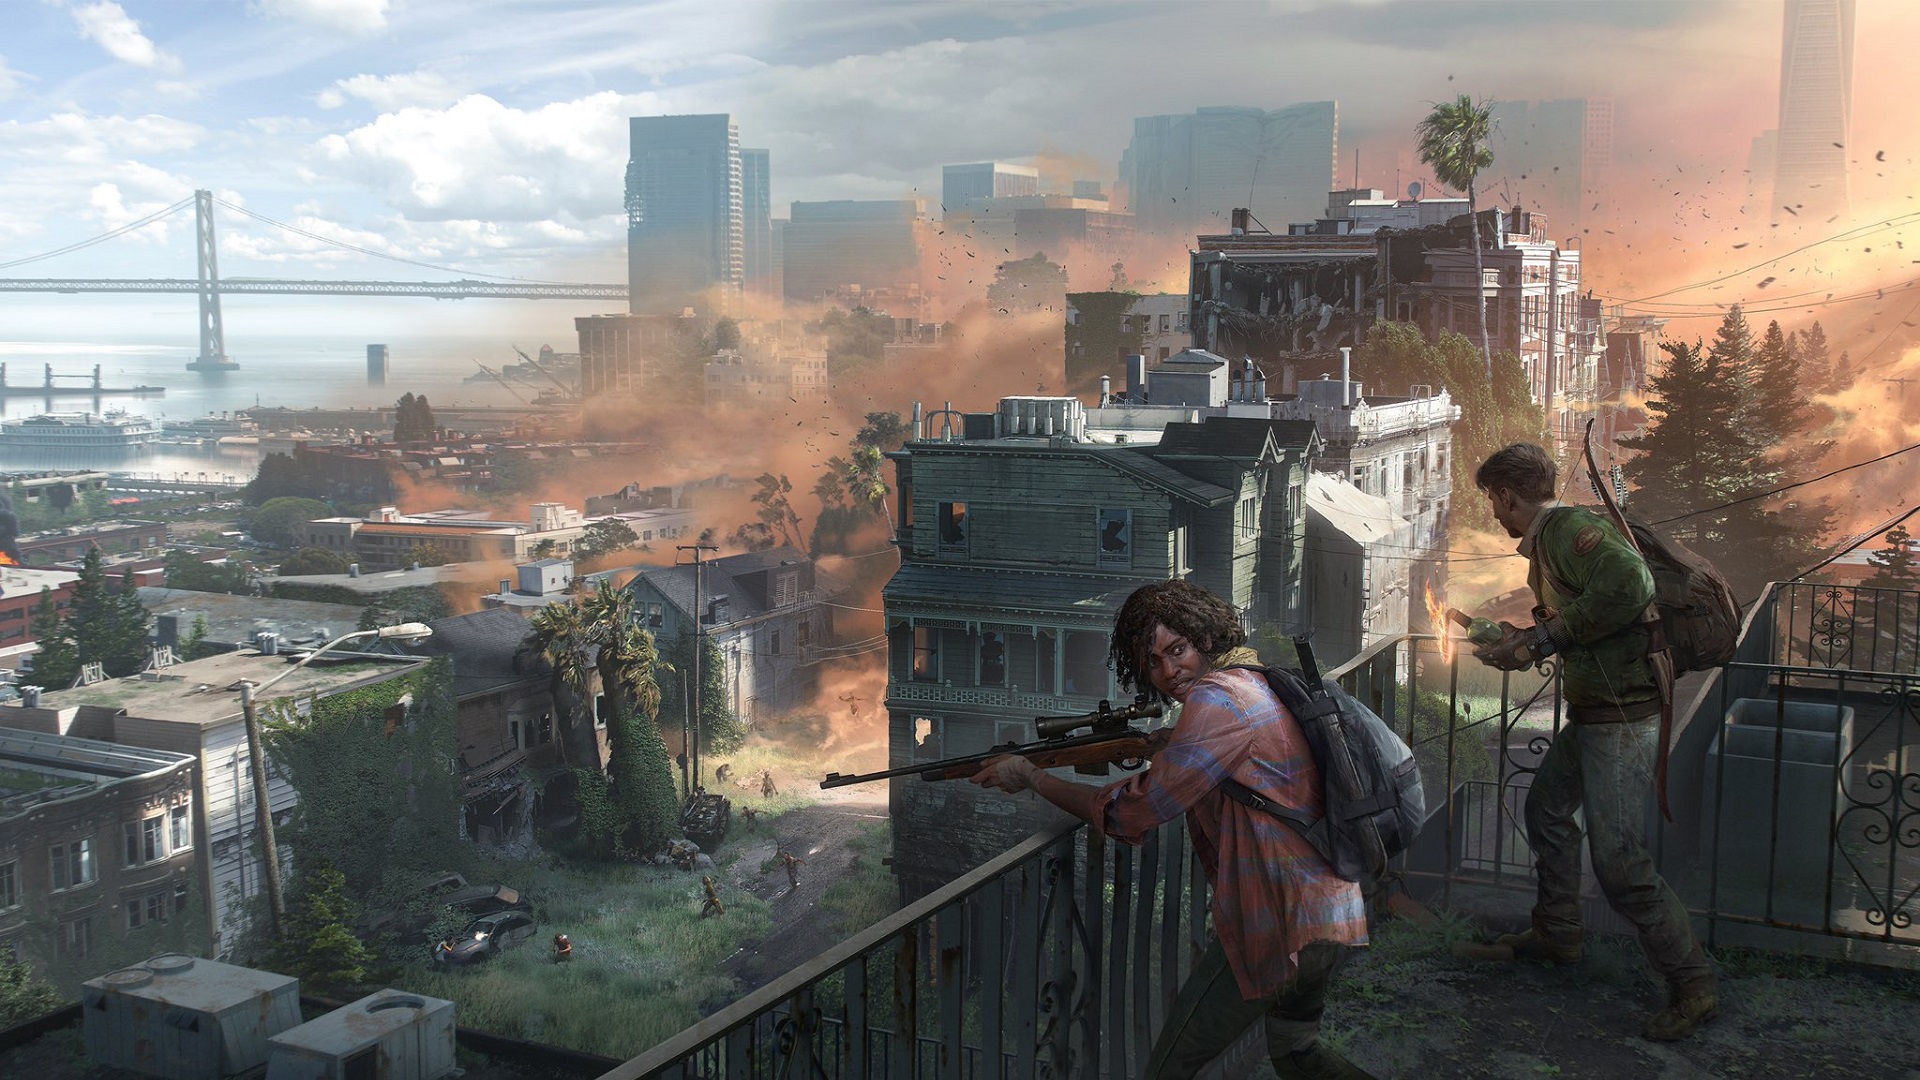 اطلاعات جدیدی از بازی The Last of Us Factions منتشر شد